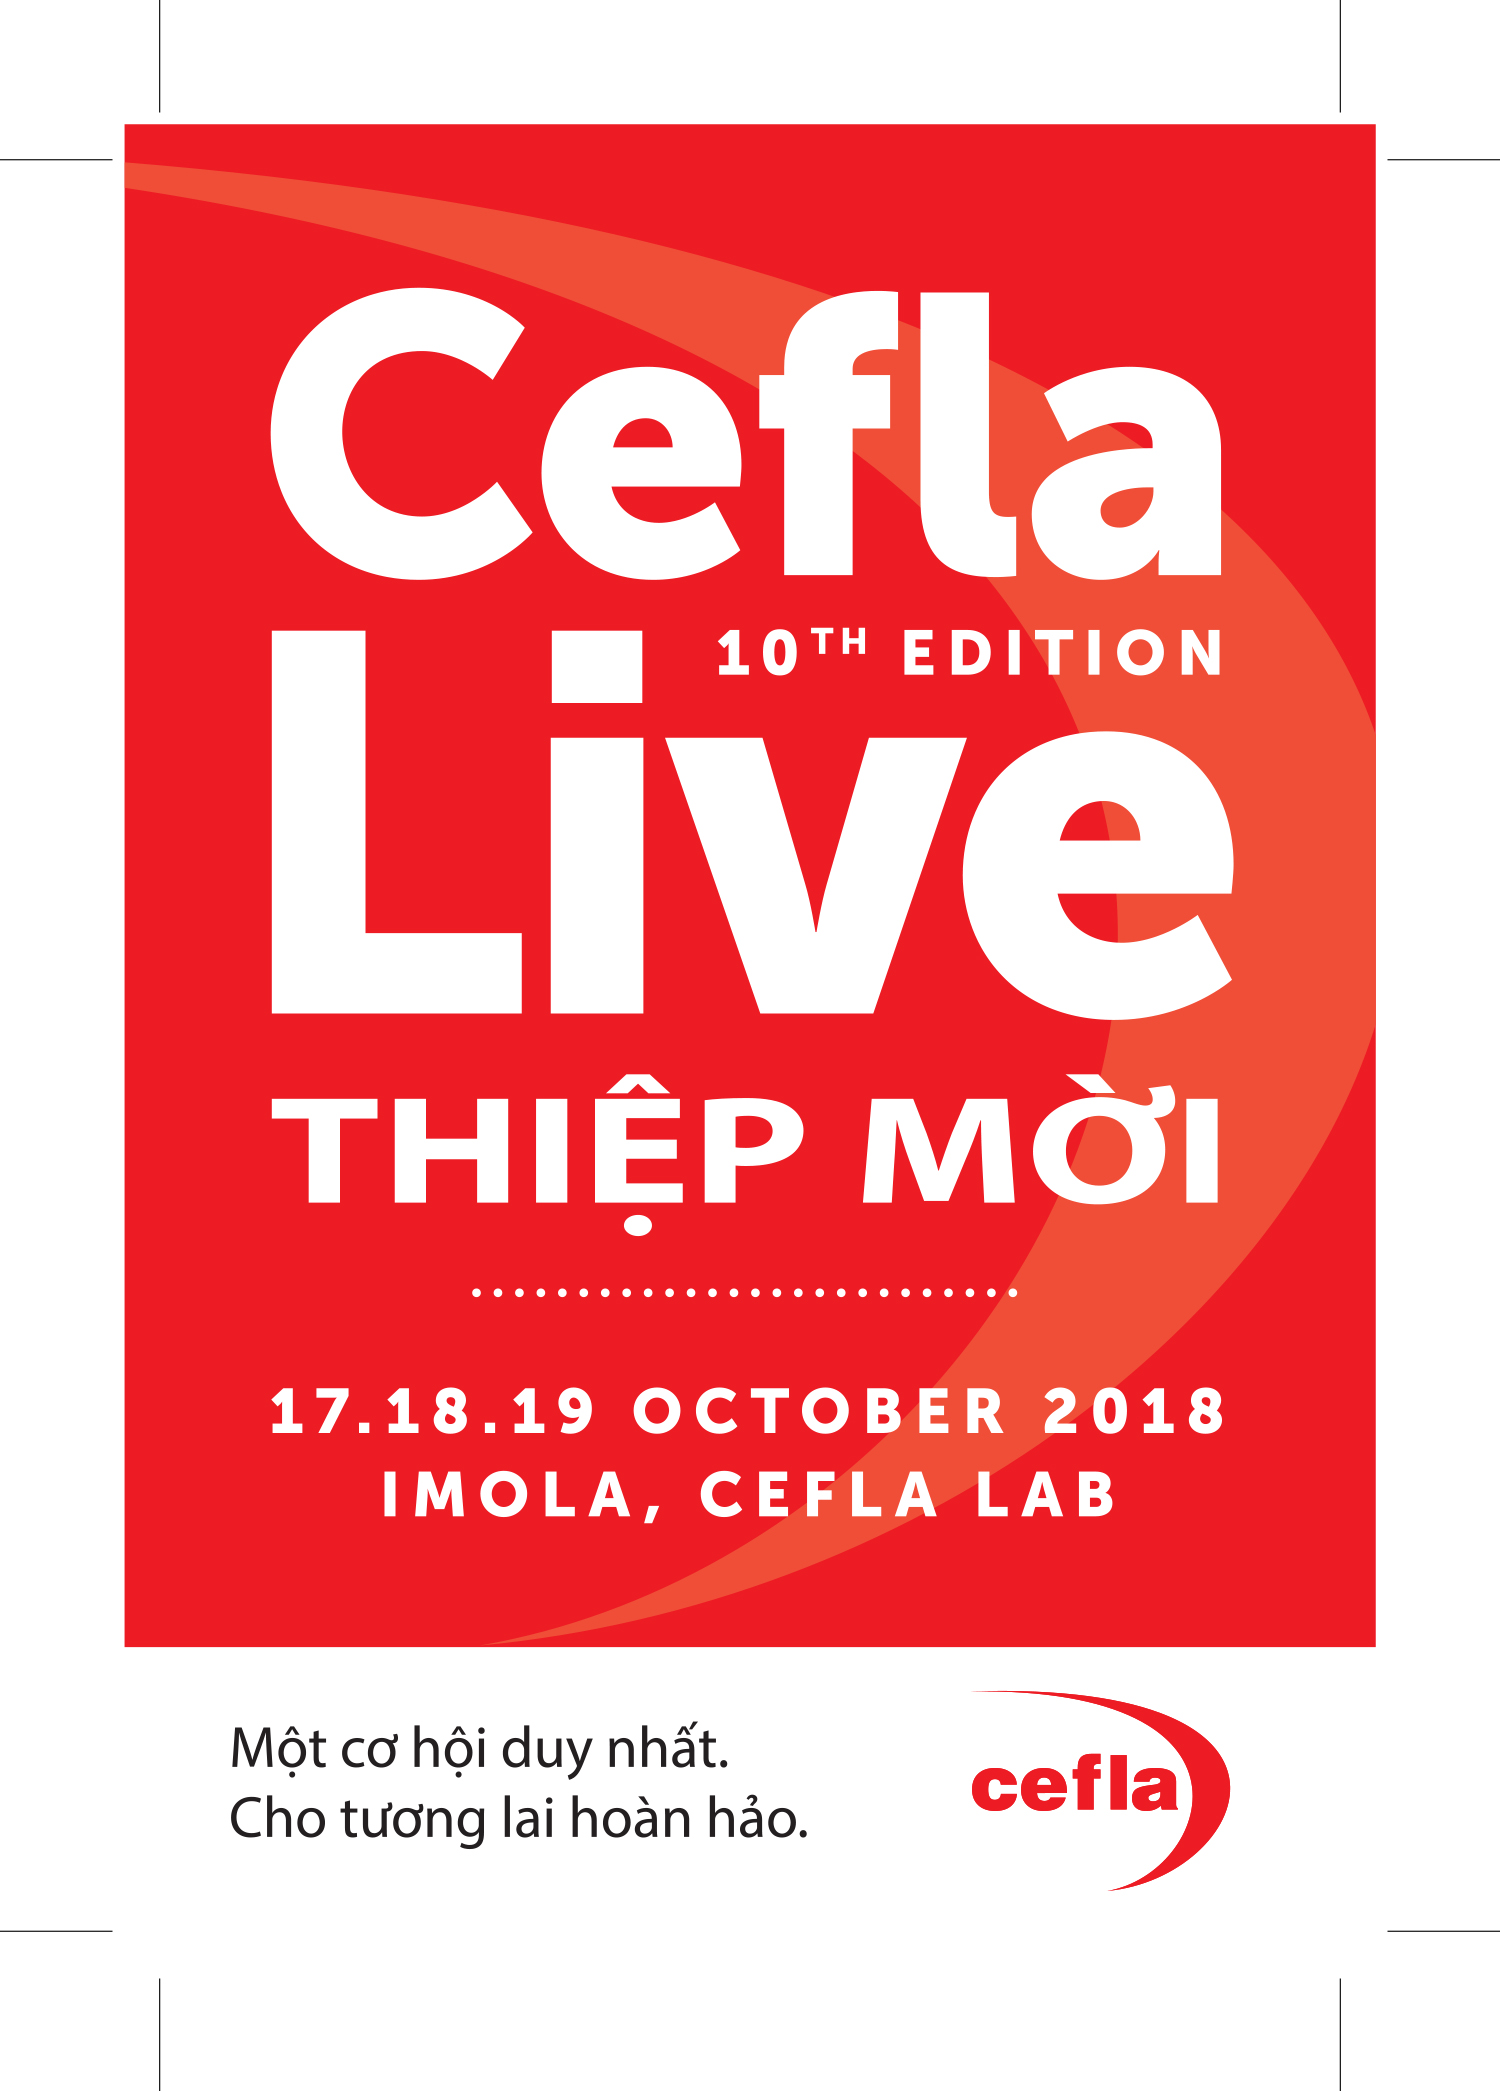 Tham dự sự kiện Cefla Live 2018